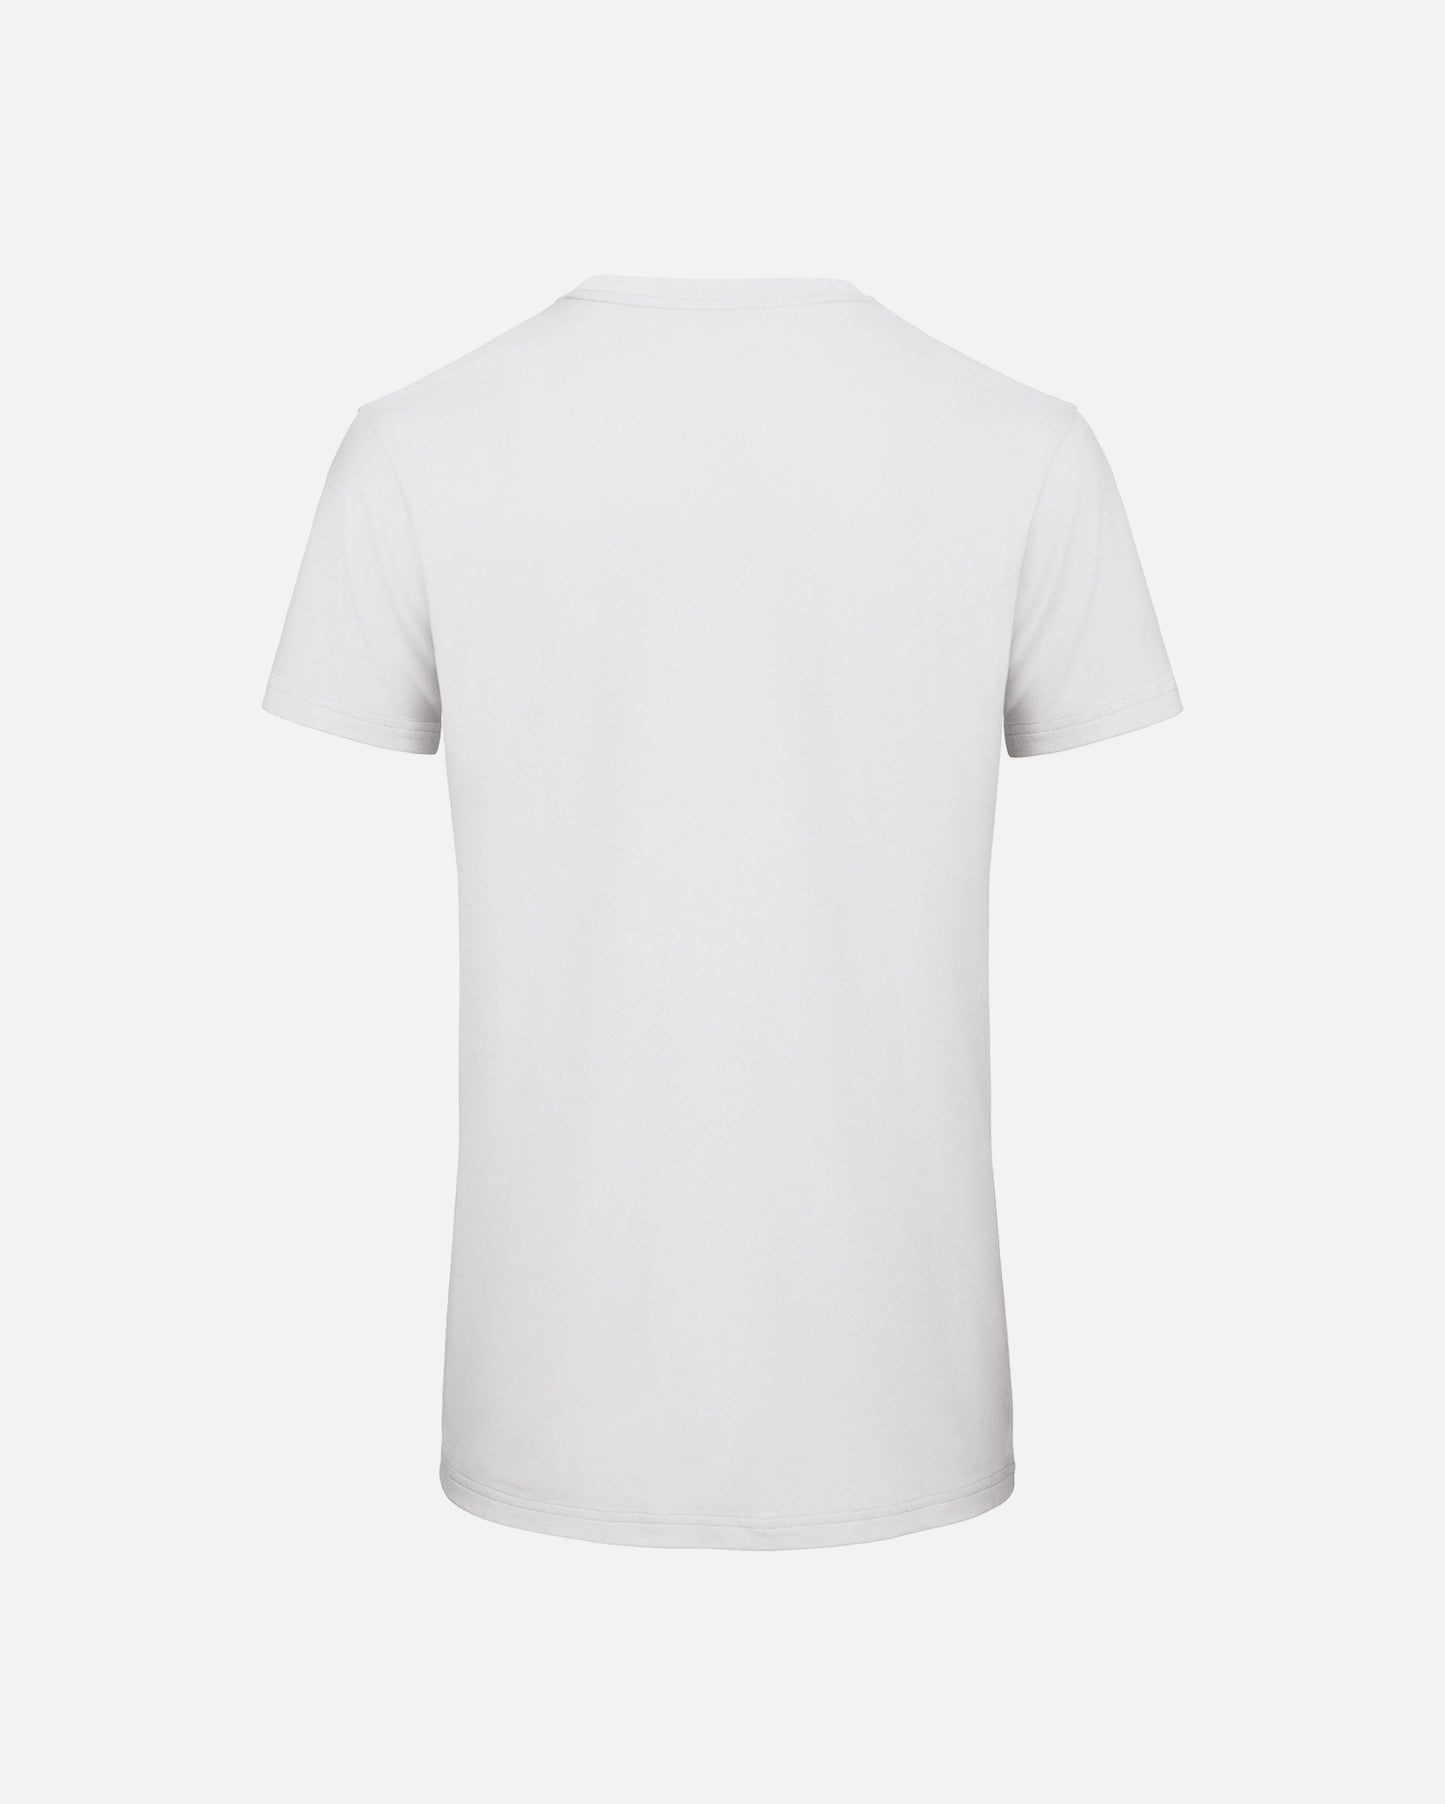 T-shirt Unisex Bianca stampa quadricromia | Unimi